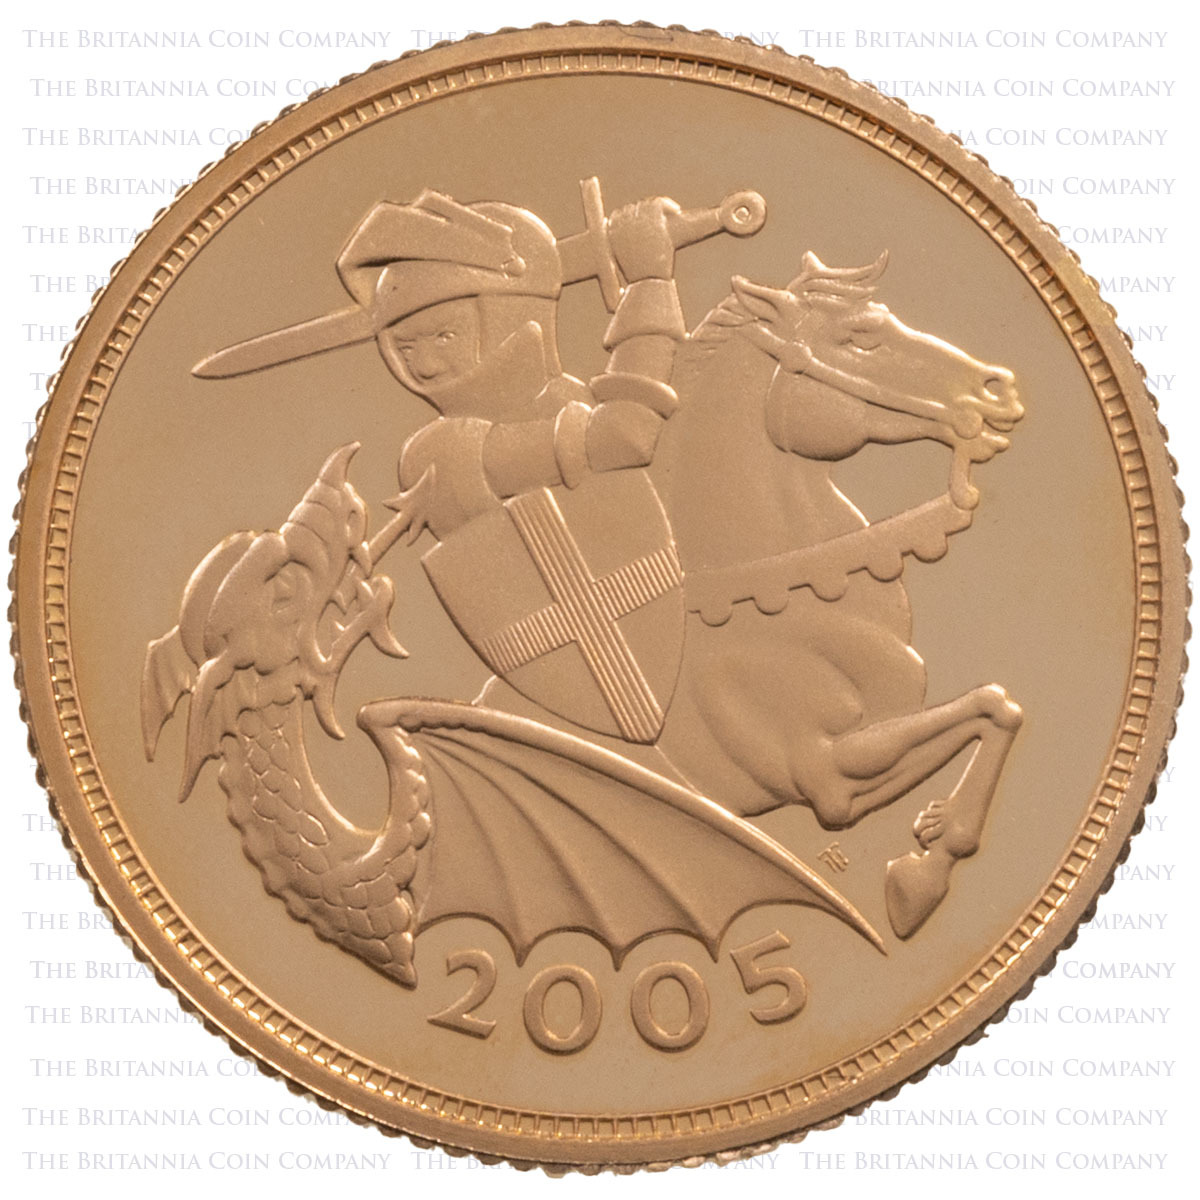 SV05 2005 Elizabeth II Gold Proof Sovereign Reverse